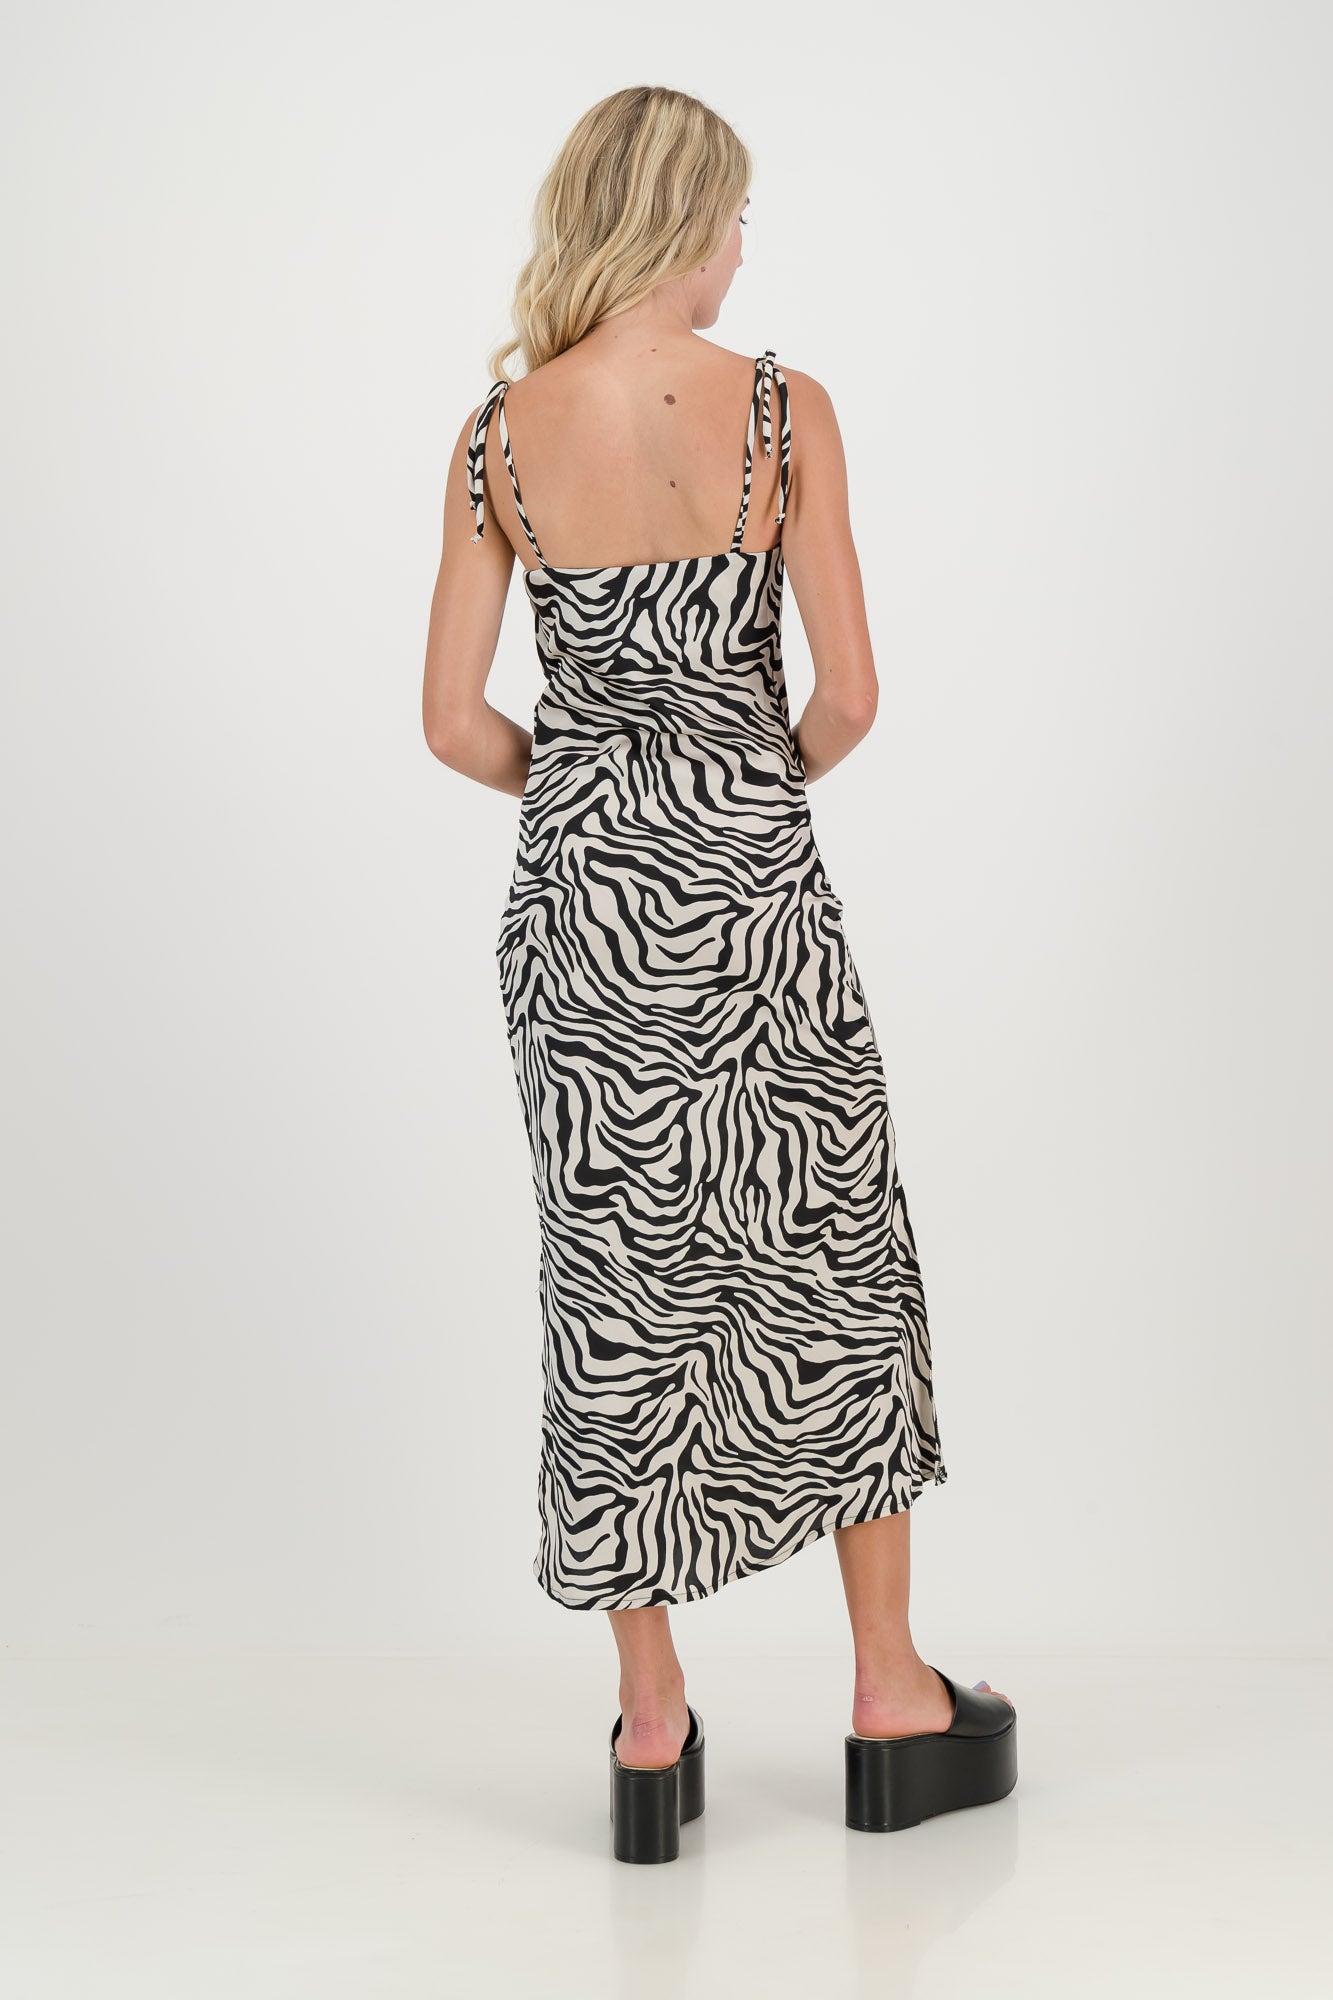 The Zebra Luna Slip Dress